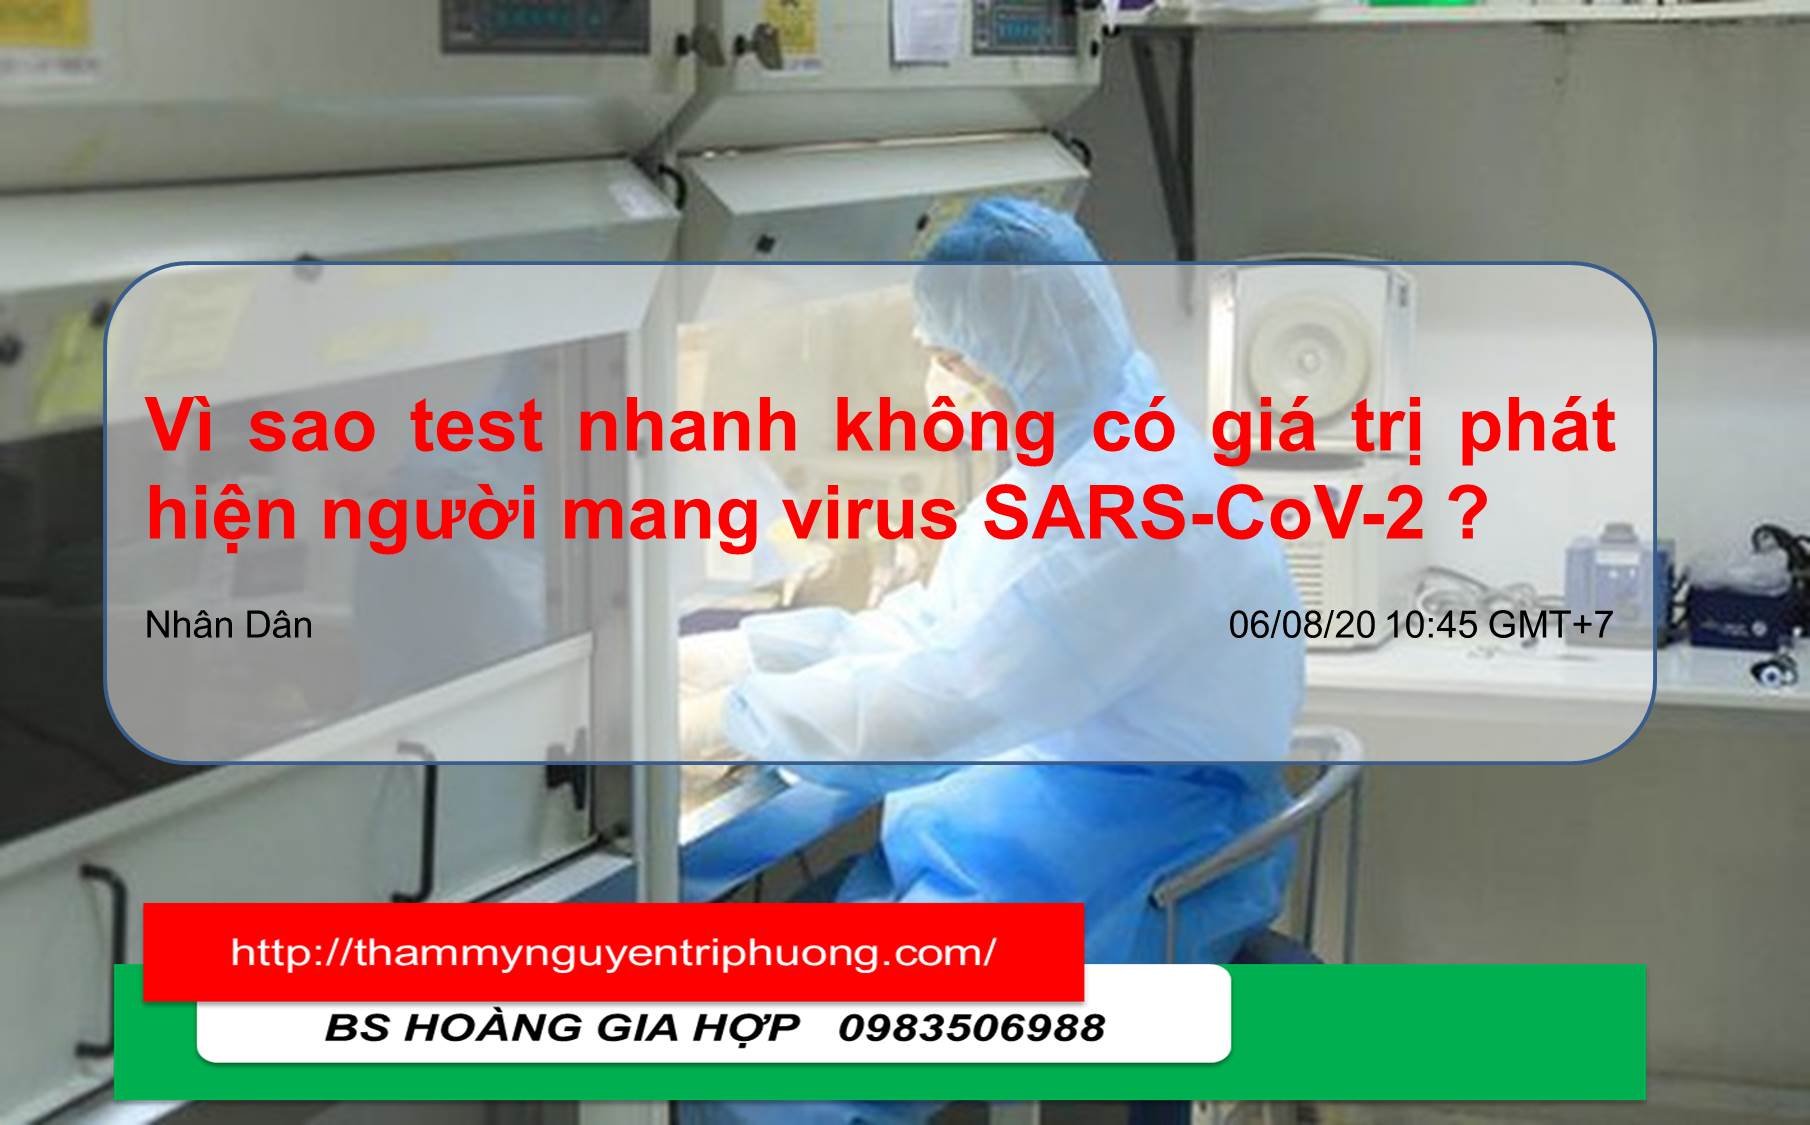 VÌ SAO TEST NHANH KHÔNG CÓ GIÁ TRỊ PHÁT HIỆN NGƯỜI MANG VIRUS SARS-CoV-2?